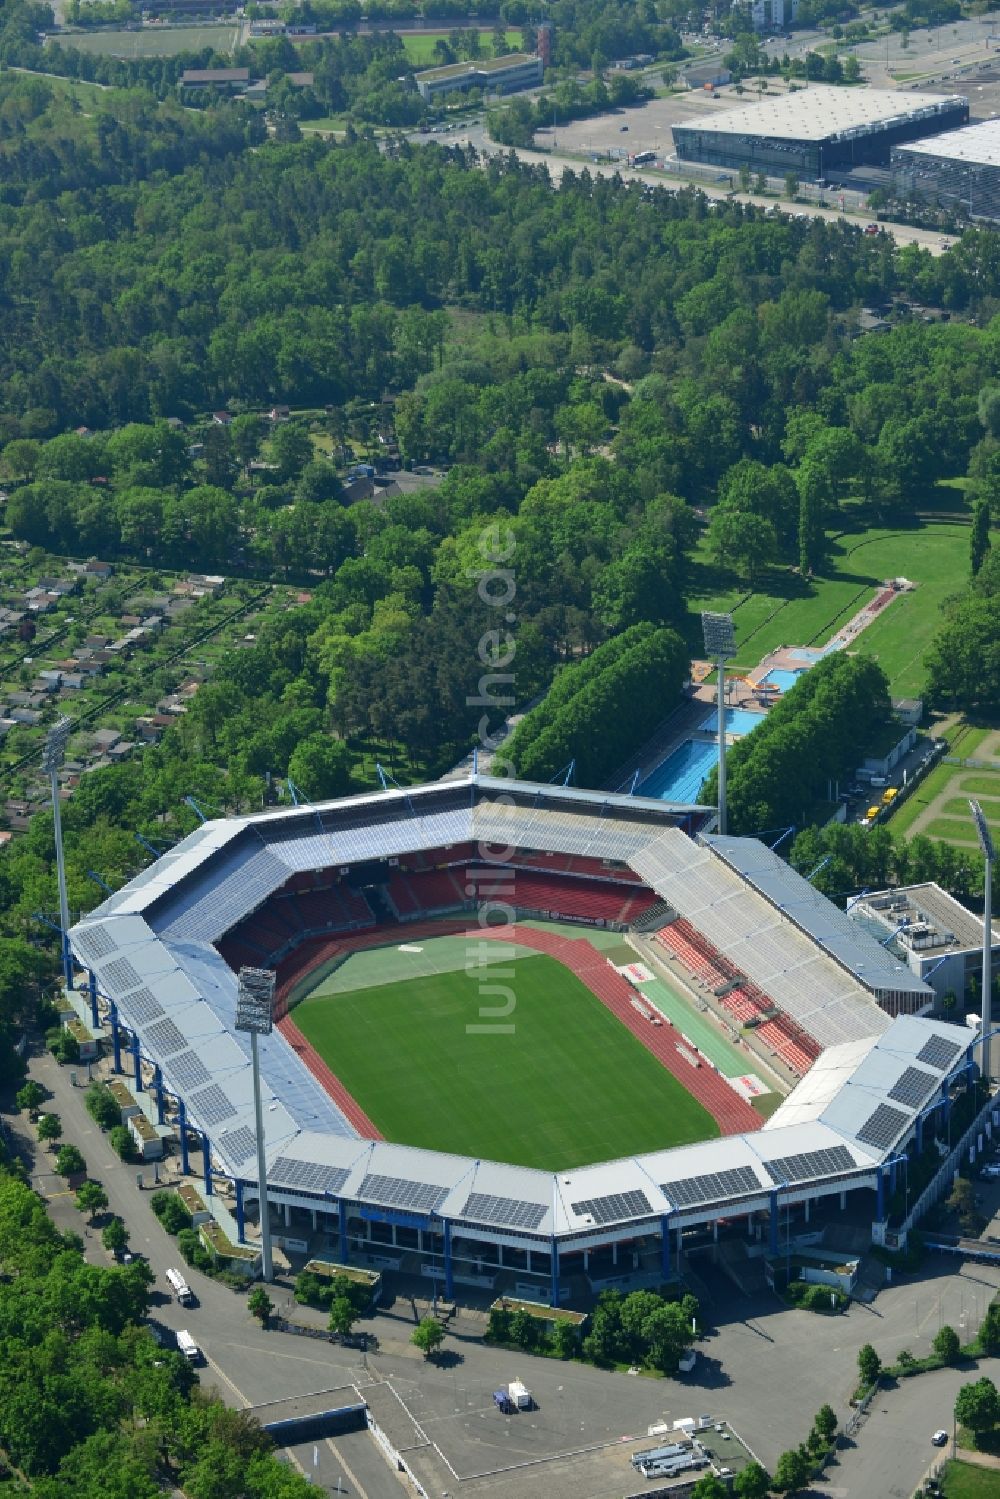 Nürnberg von oben - Gelände am Grundig Stadion in Nürnberg im Bundesland Bayern